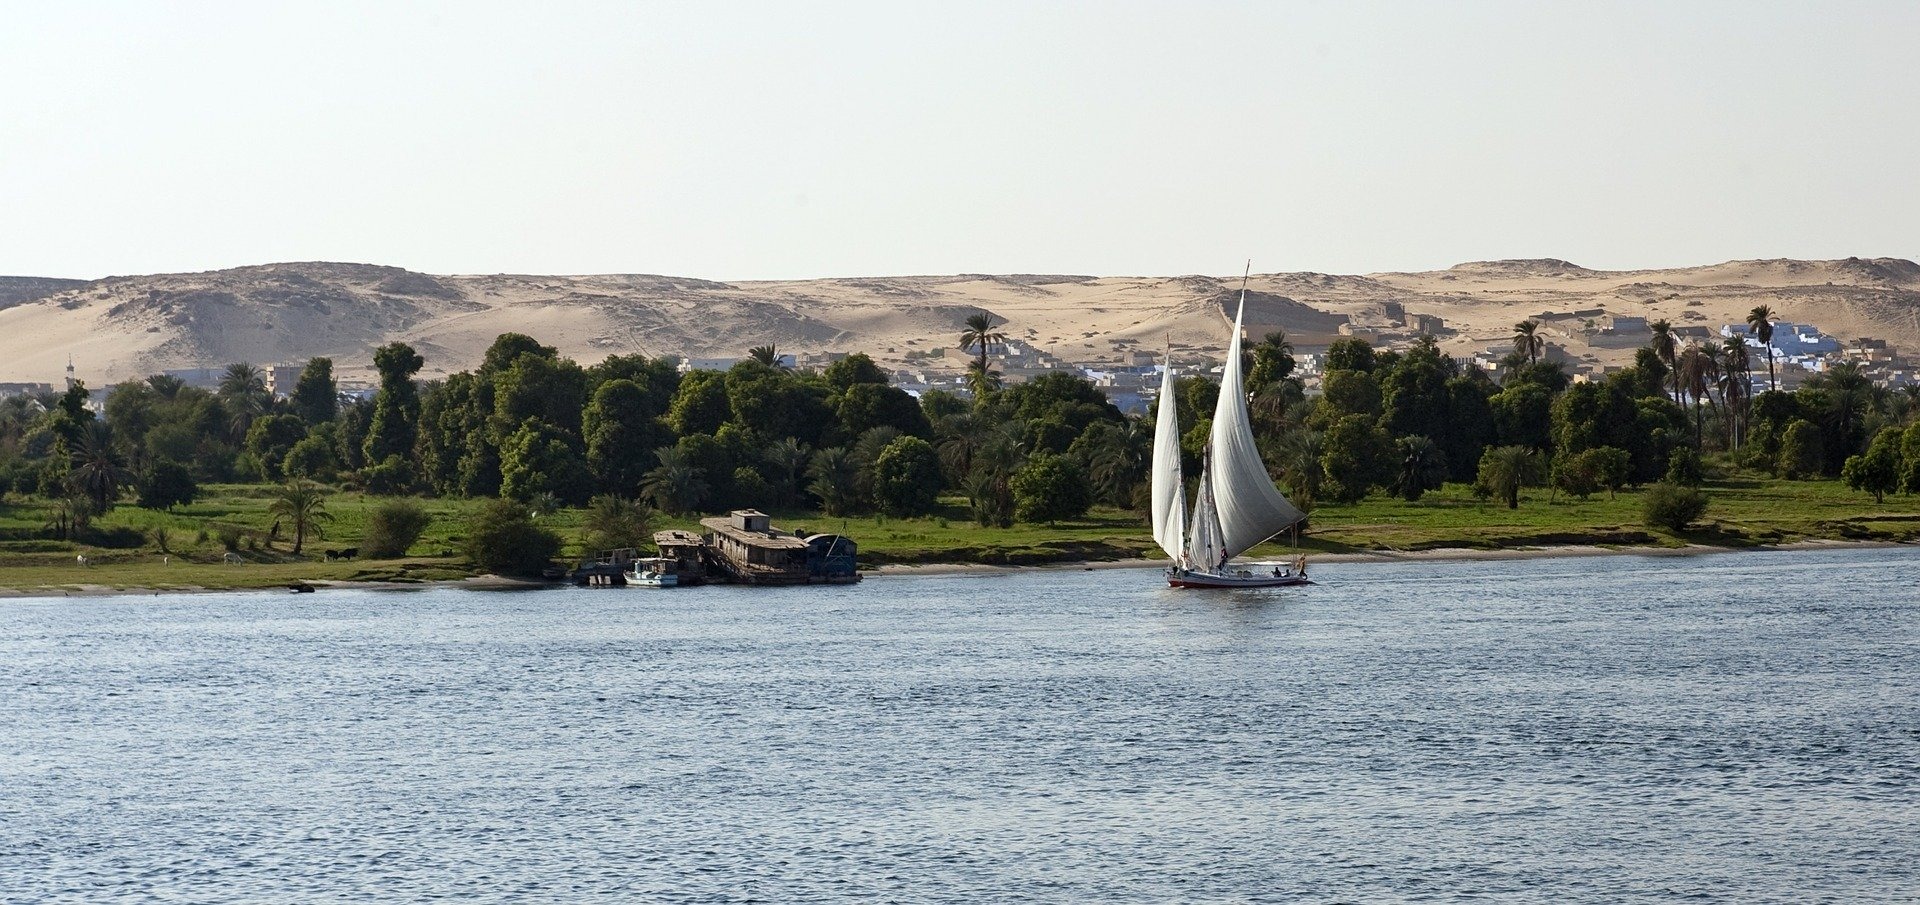 egypt tours online